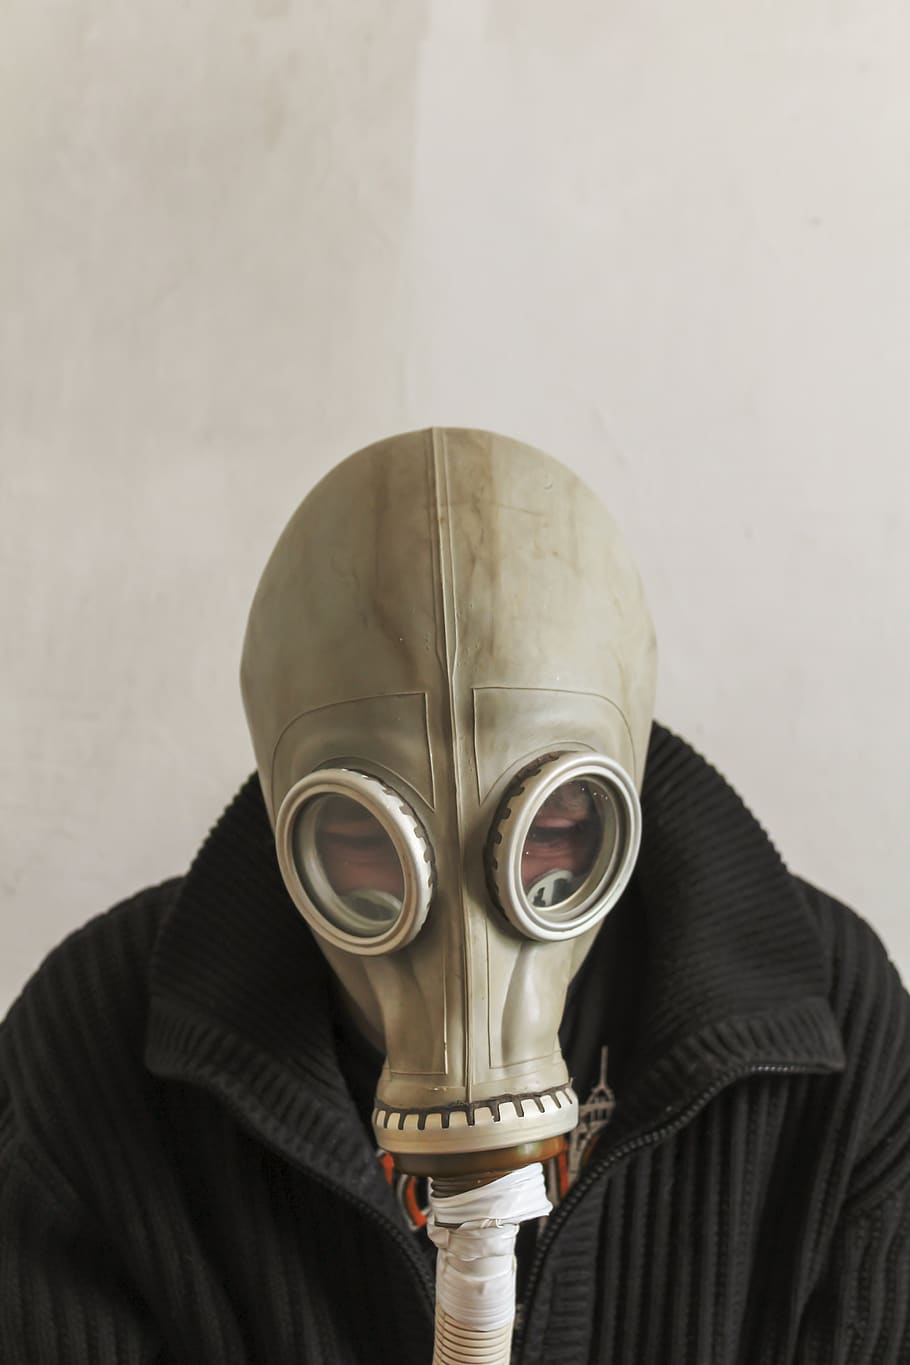 pria dengan masker gas, masker gas, pria, chernobyl, bahaya, topeng, orang yang tidak bisa dikenali, dalam ruangan, satu orang, wajah dikaburkan